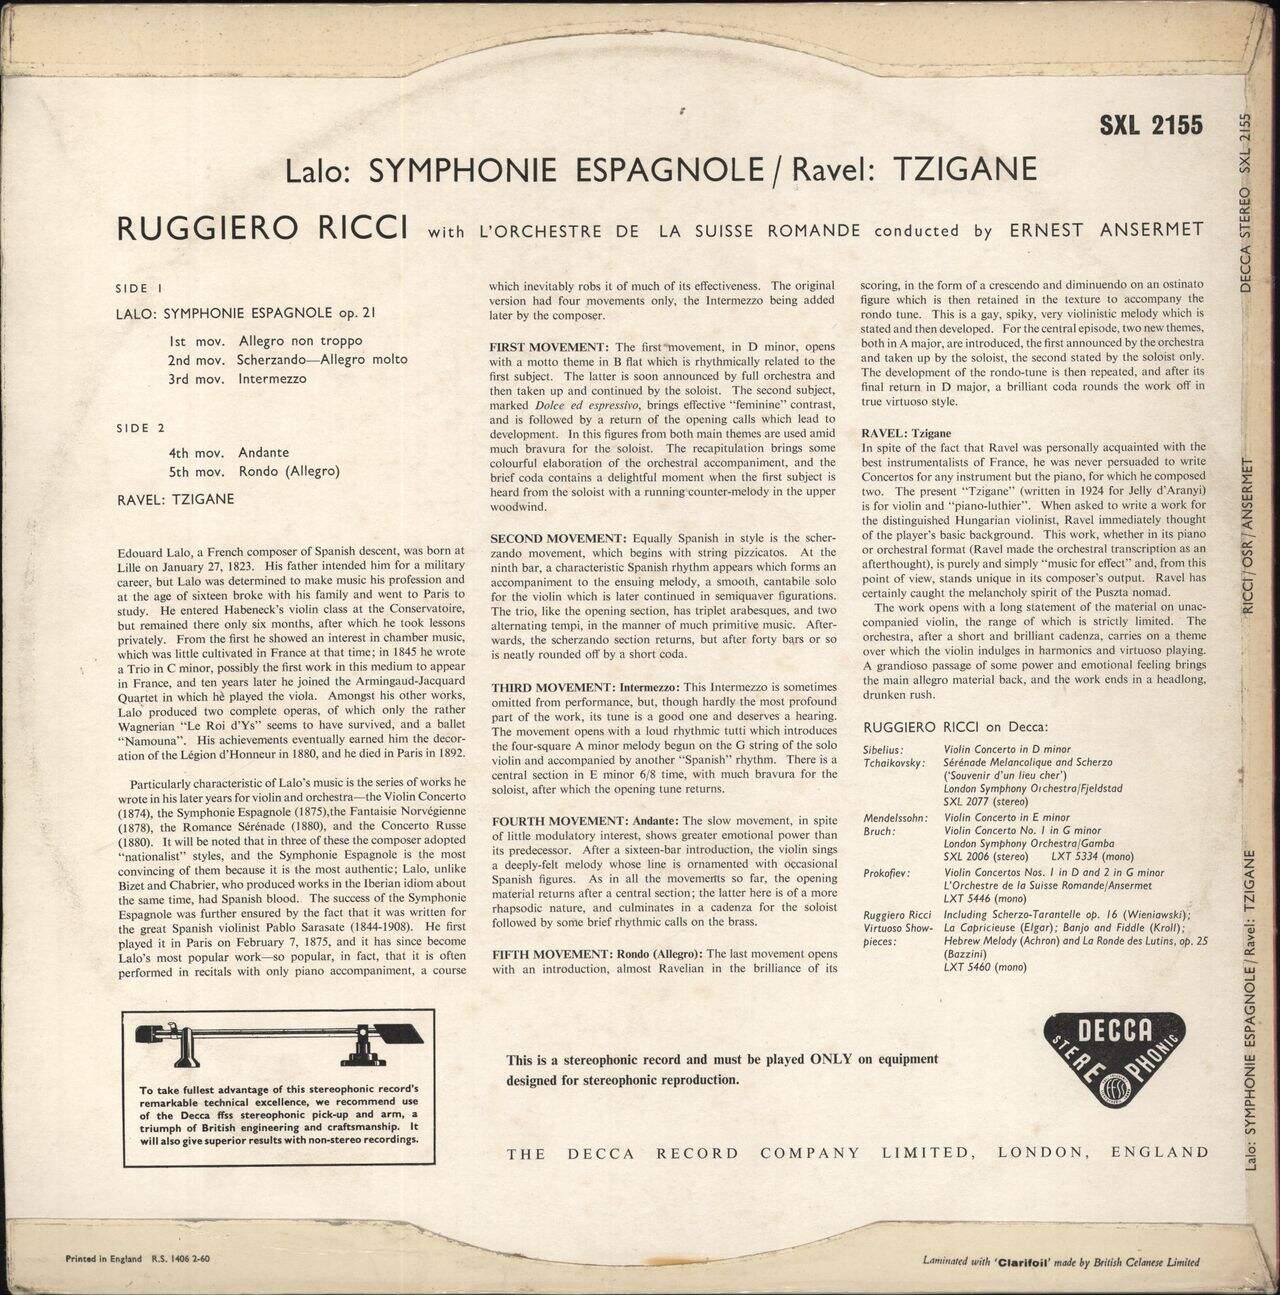 Ruggiero Ricci Lalo: Symphonie Espagnole / Ravel: Tzigane - ED1 UK Vinyl LP